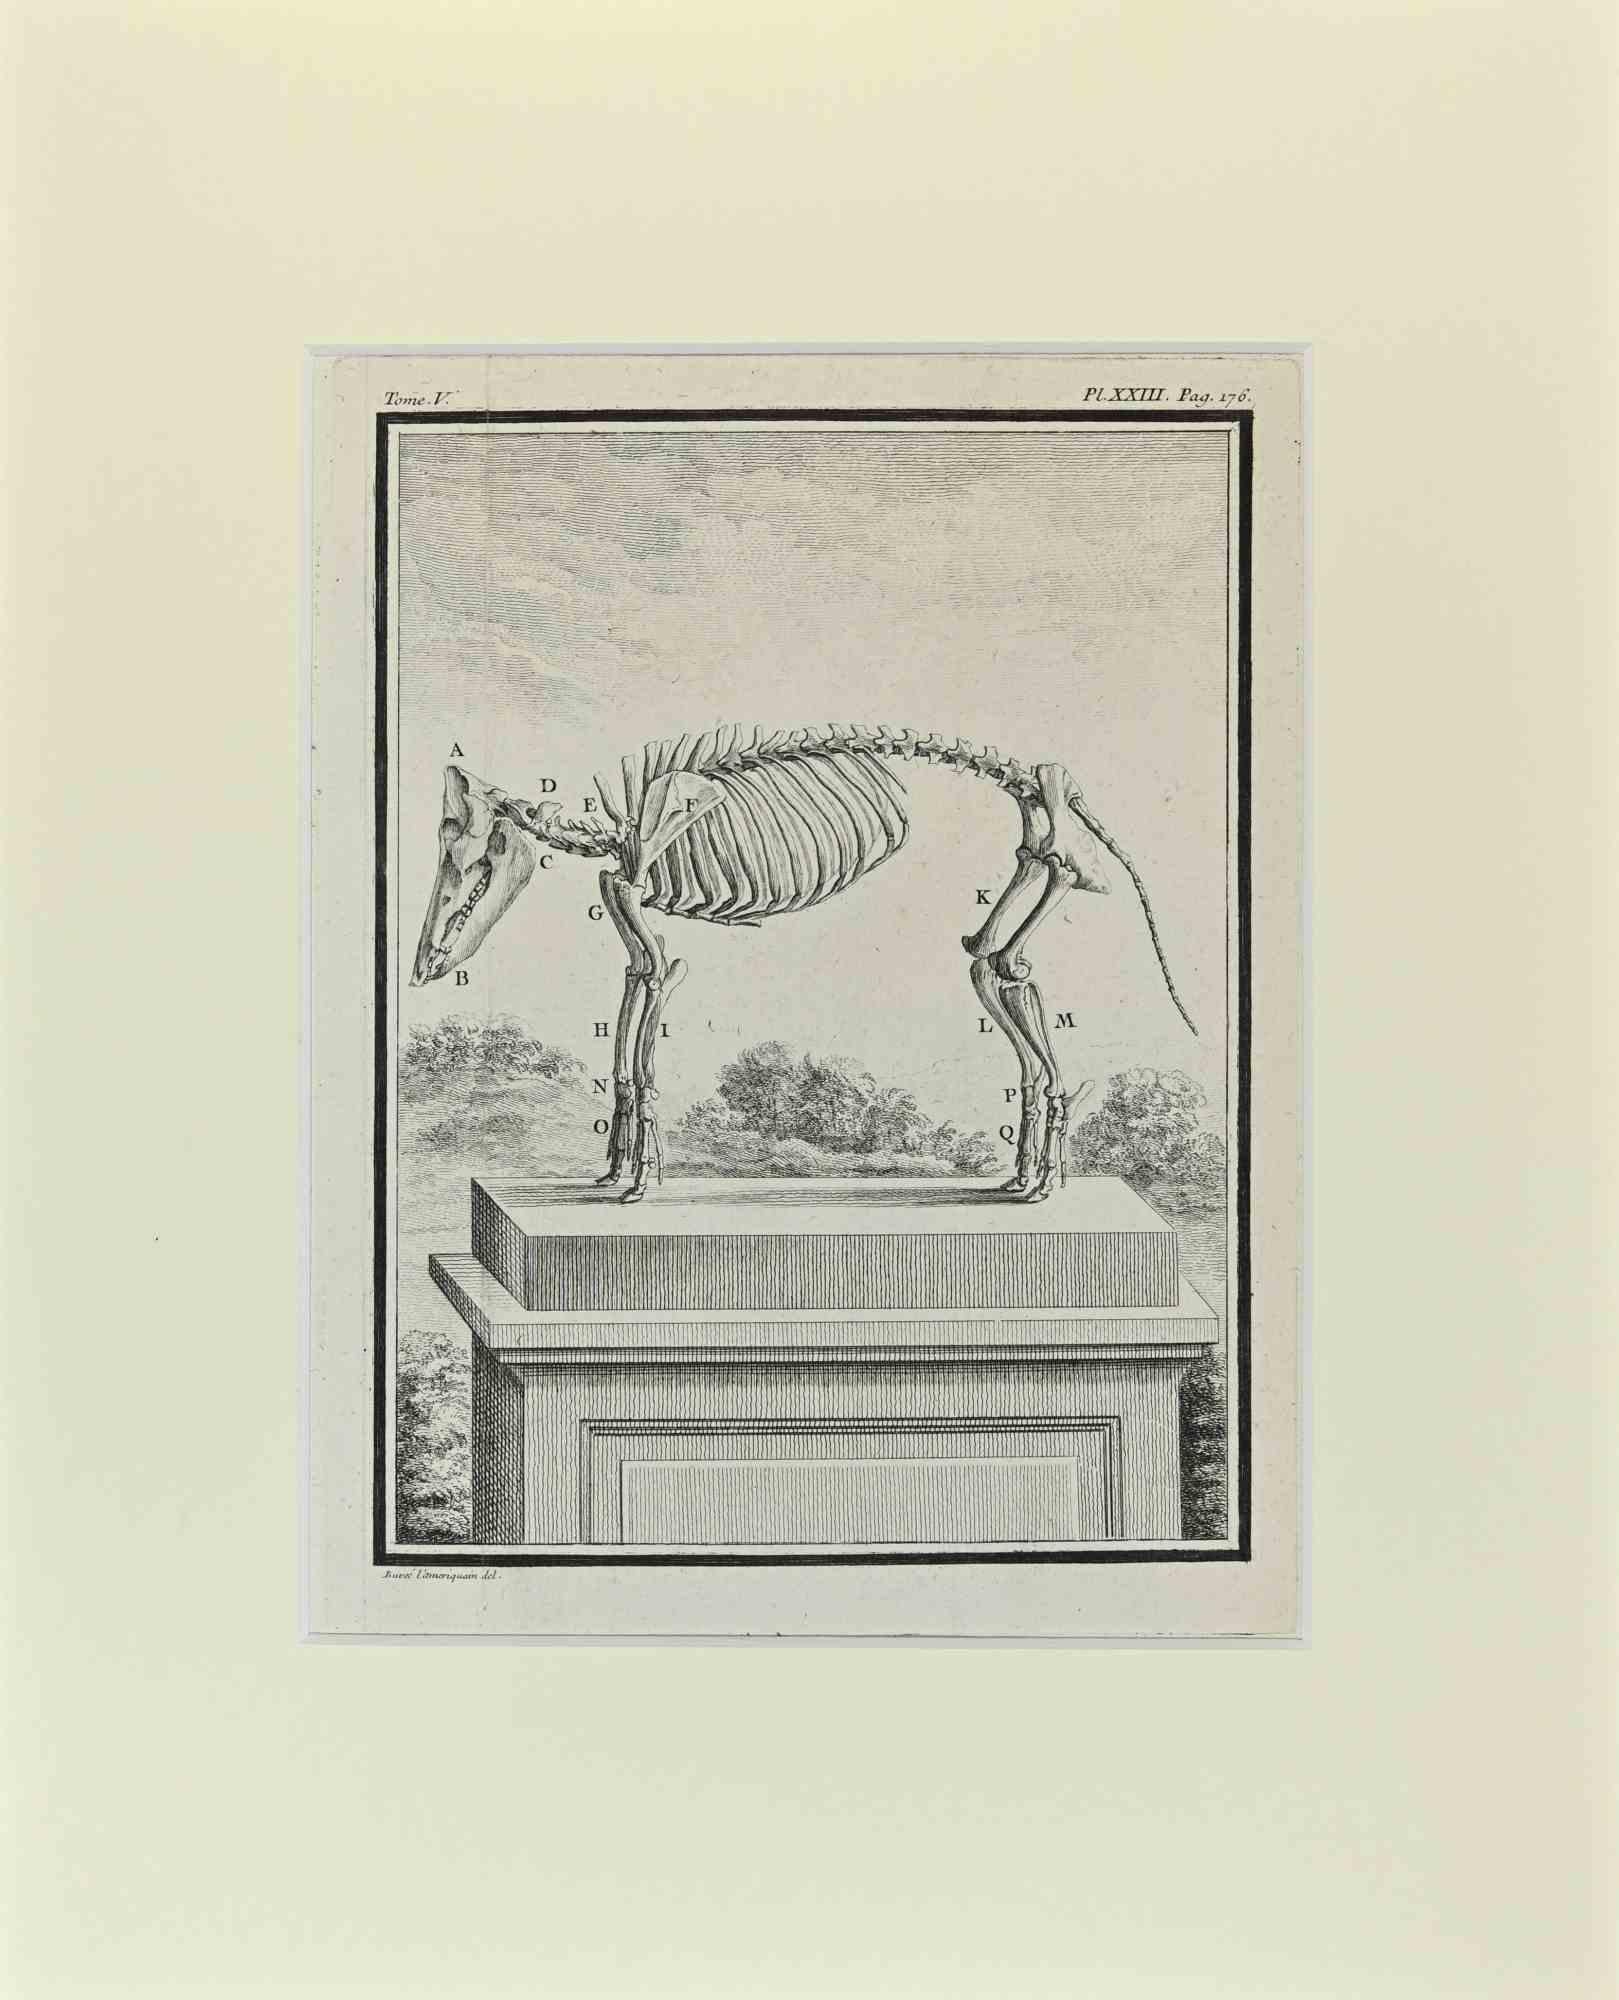 Animal Skeleton ist ein Kunstwerk von Buvée l'Américain aus dem Jahr 1771.  

Radierung B./W. Druck auf Elfenbeinpapier. Signiert auf der Platte am unteren linken Rand.

Das Werk ist auf Karton geklebt. Abmessungen insgesamt: 35x28 cm.

Das